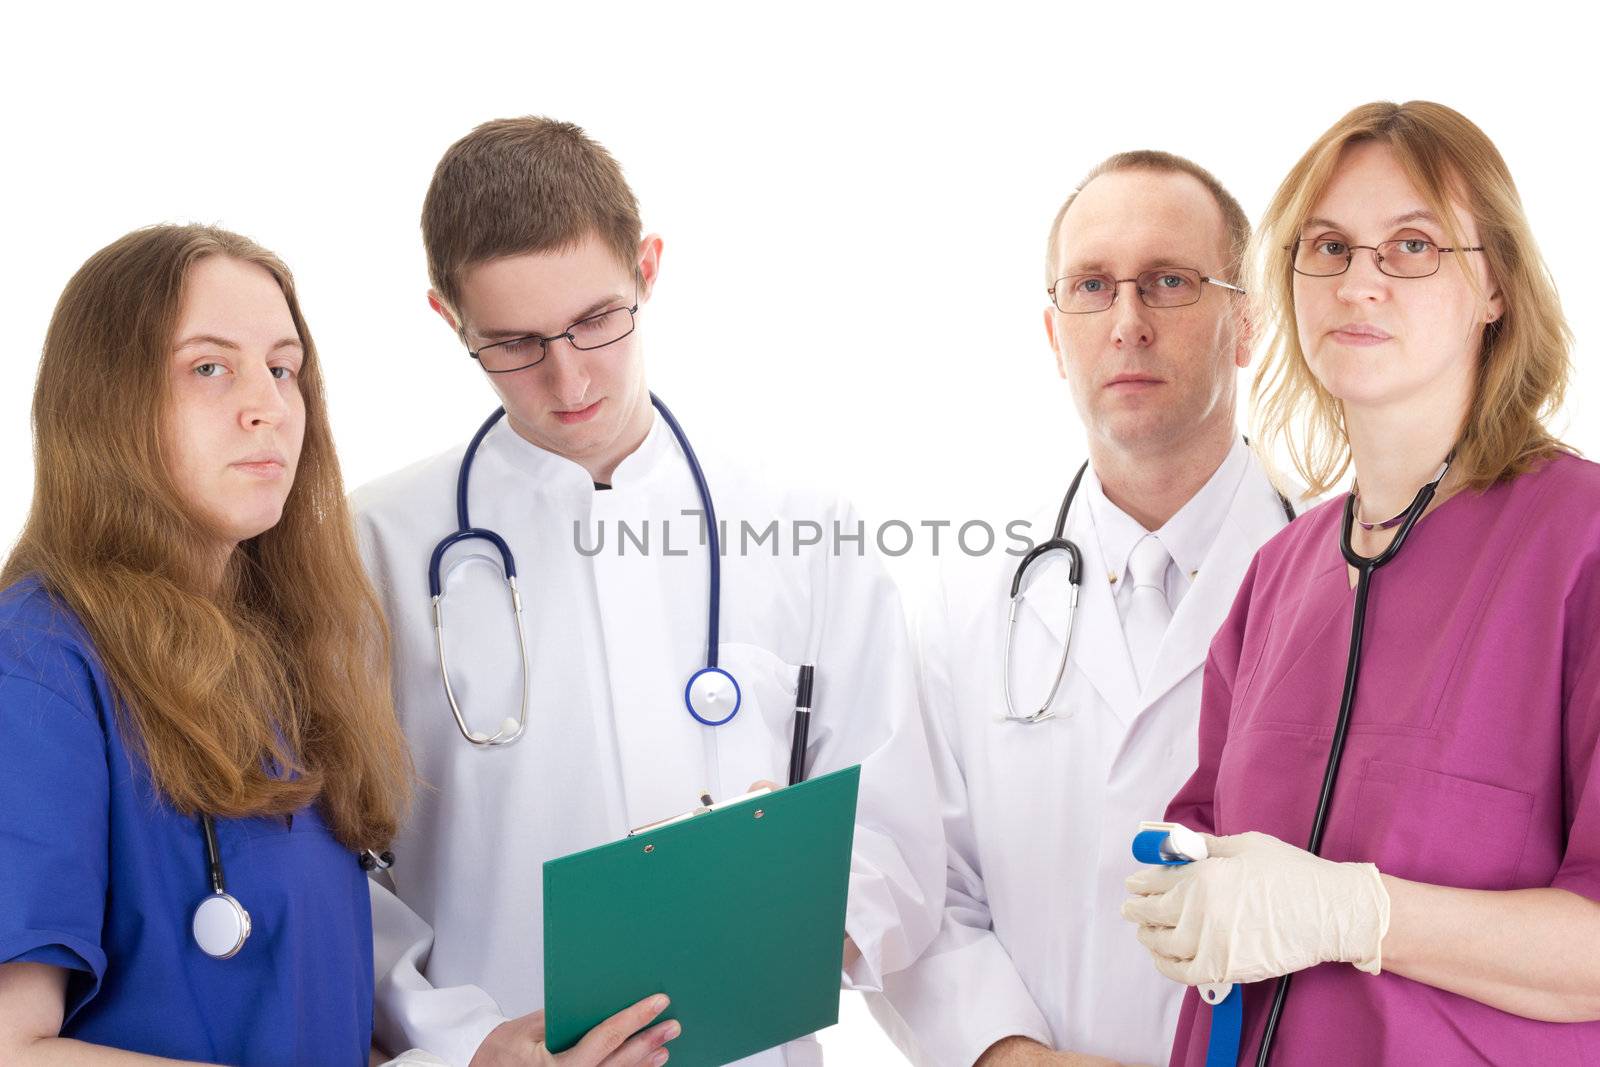 Medical people